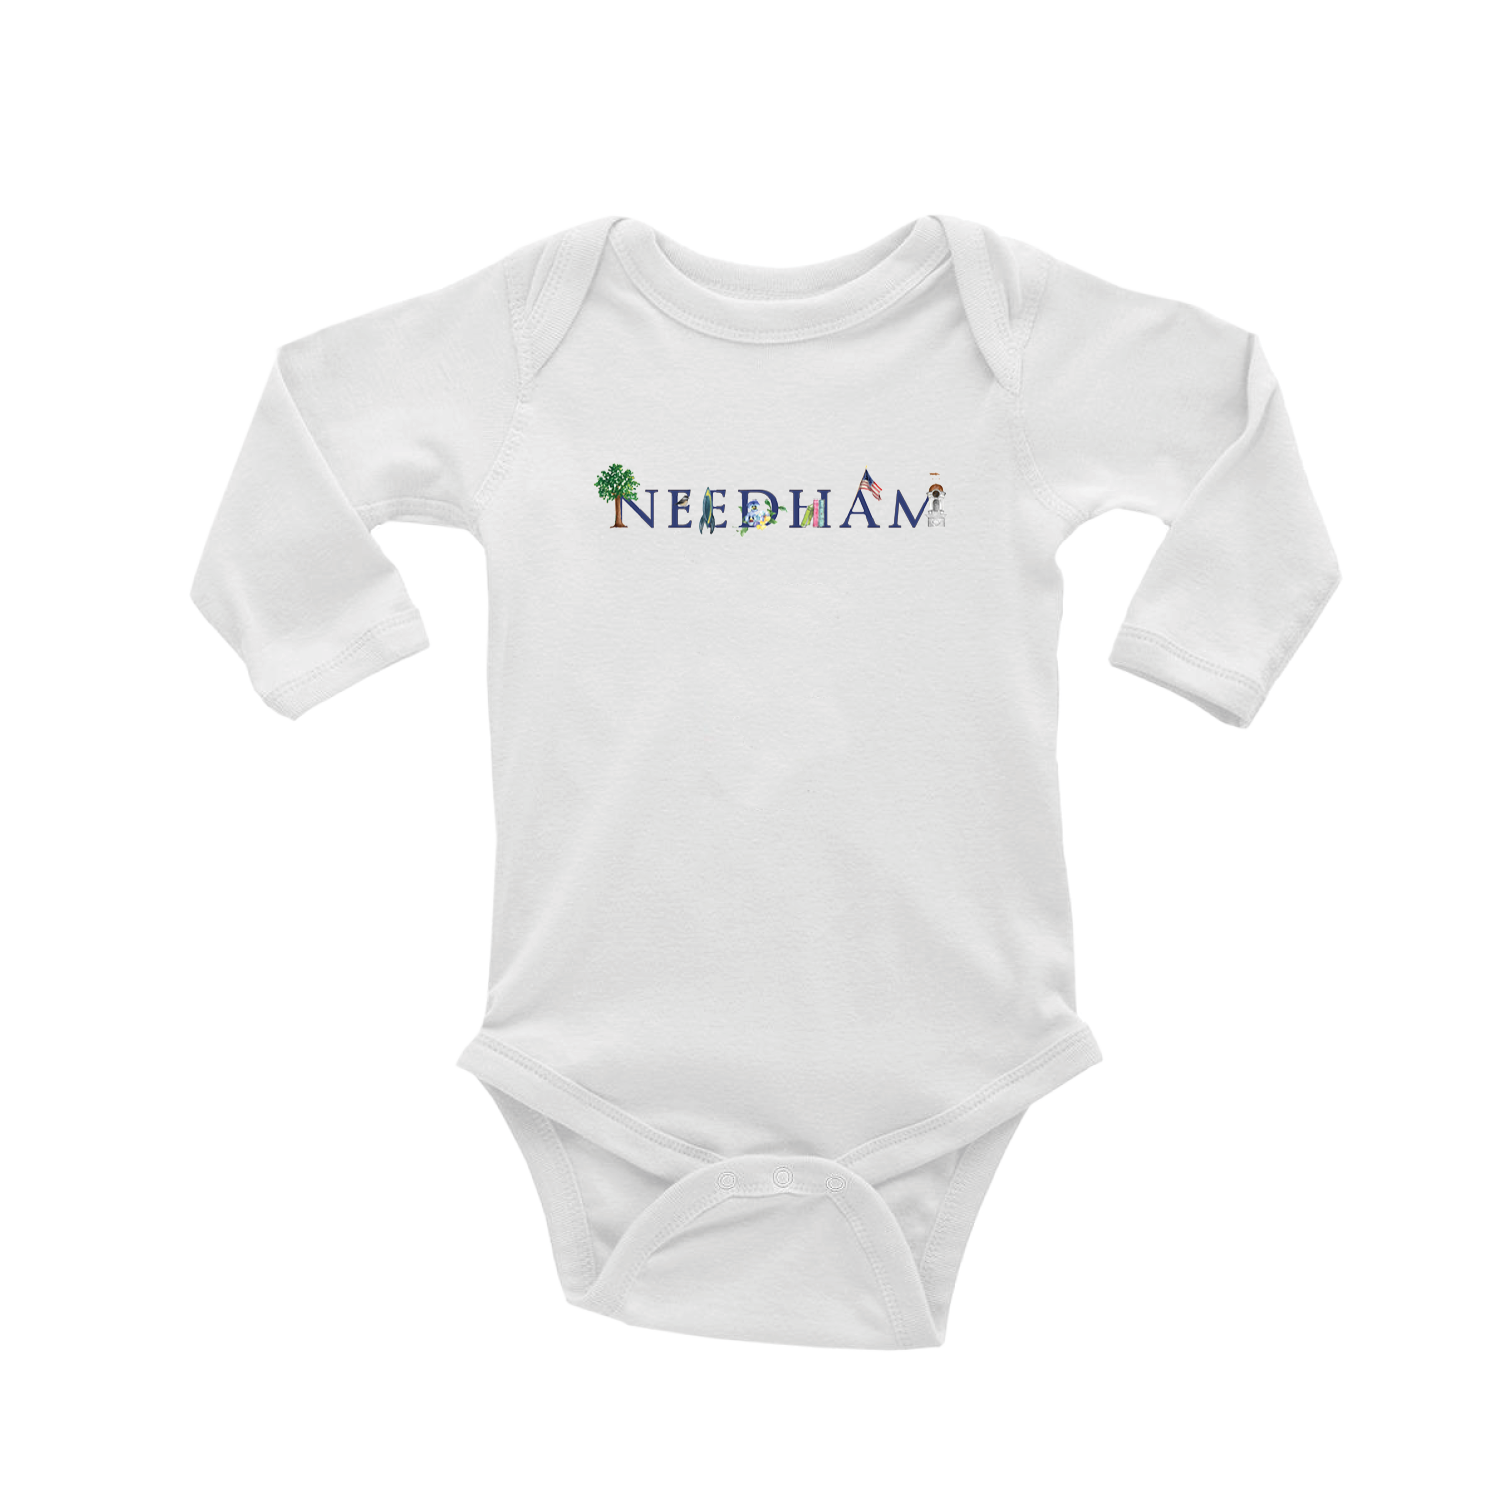 needham baby snap up long sleeve